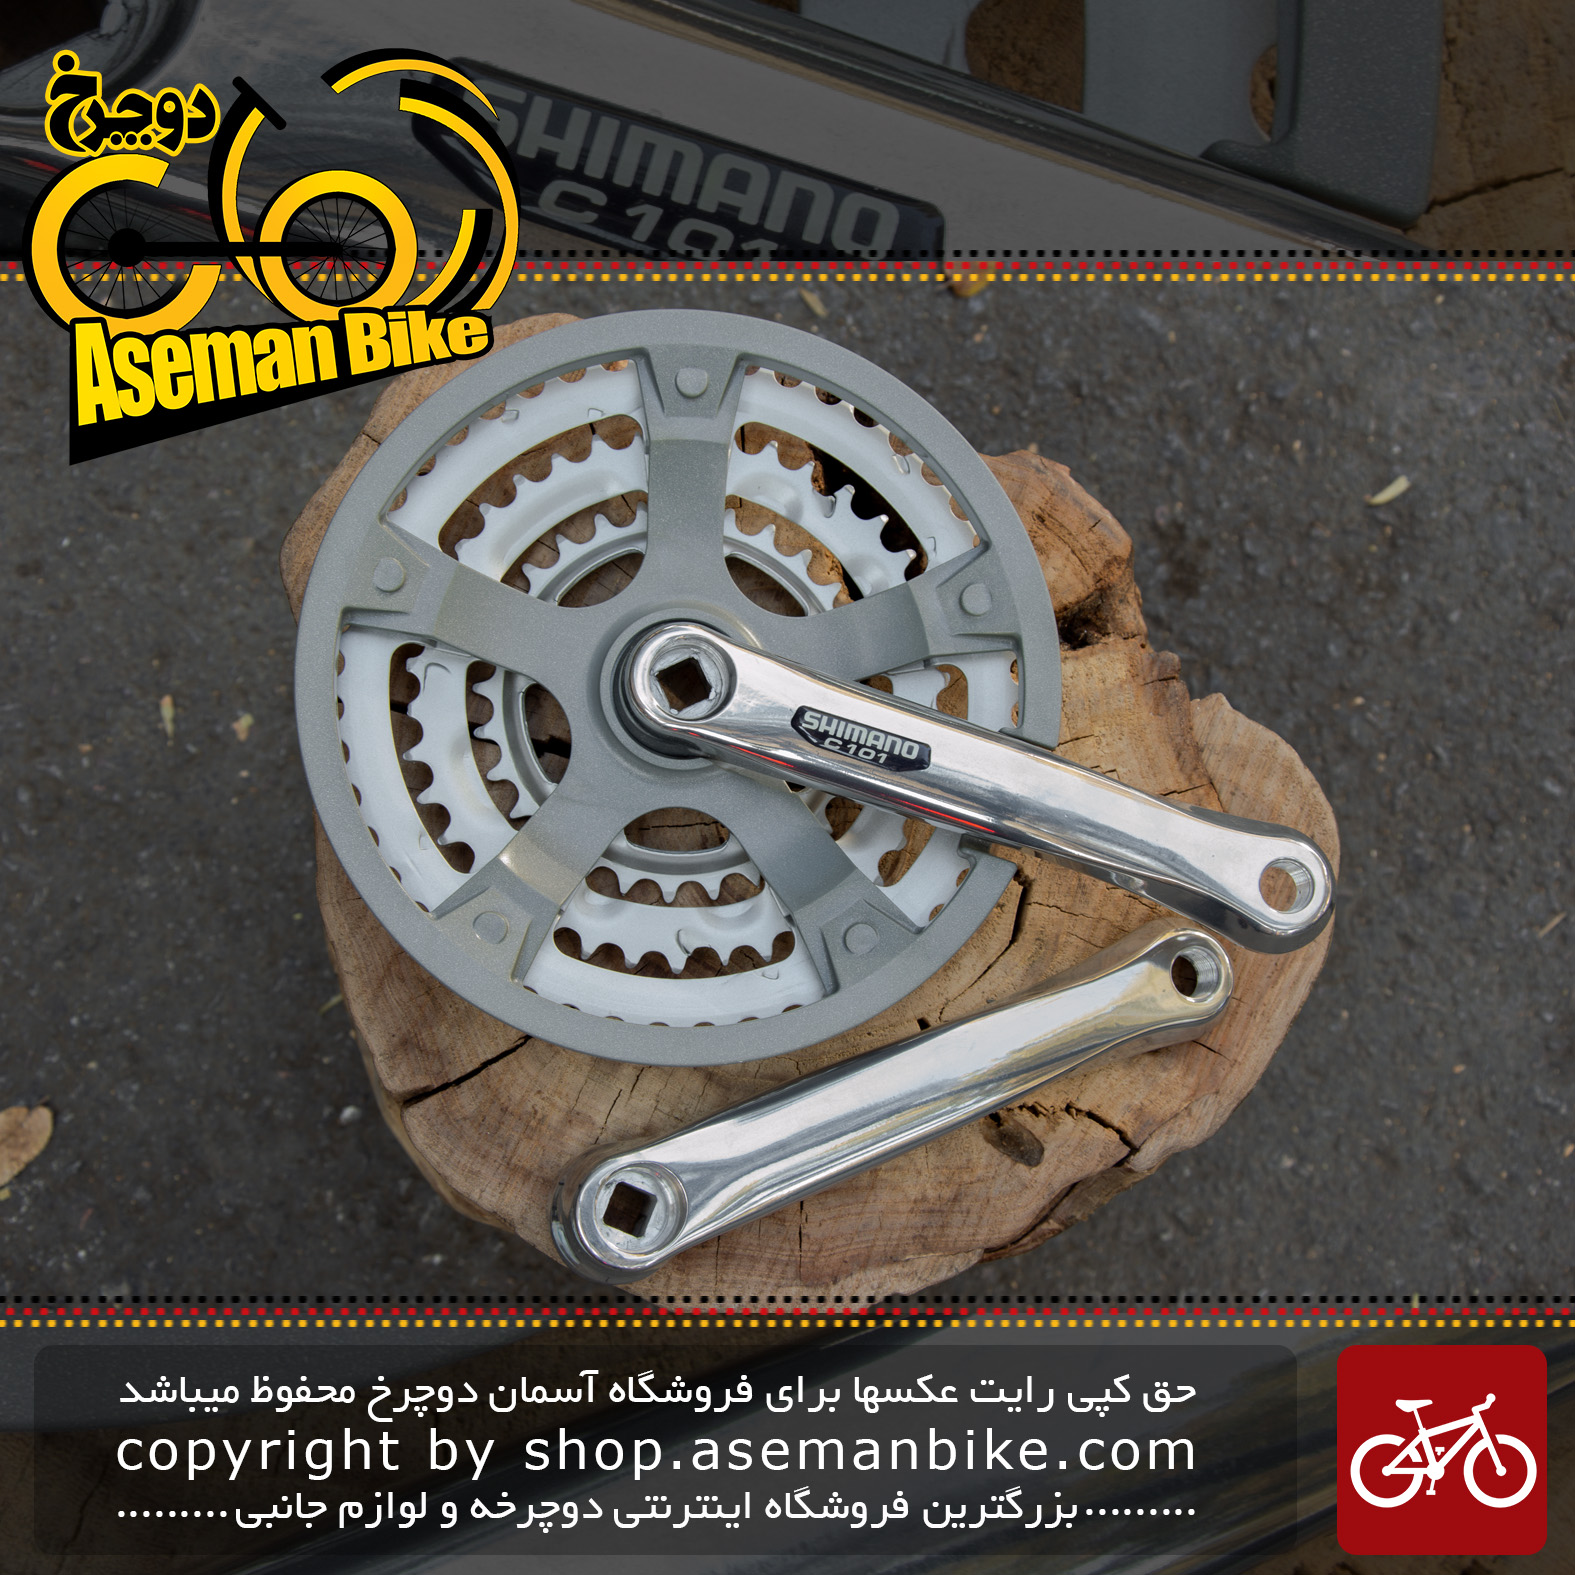 طبق قامه دوچرخه شیمانو سی 101 Shimano Crankset C101